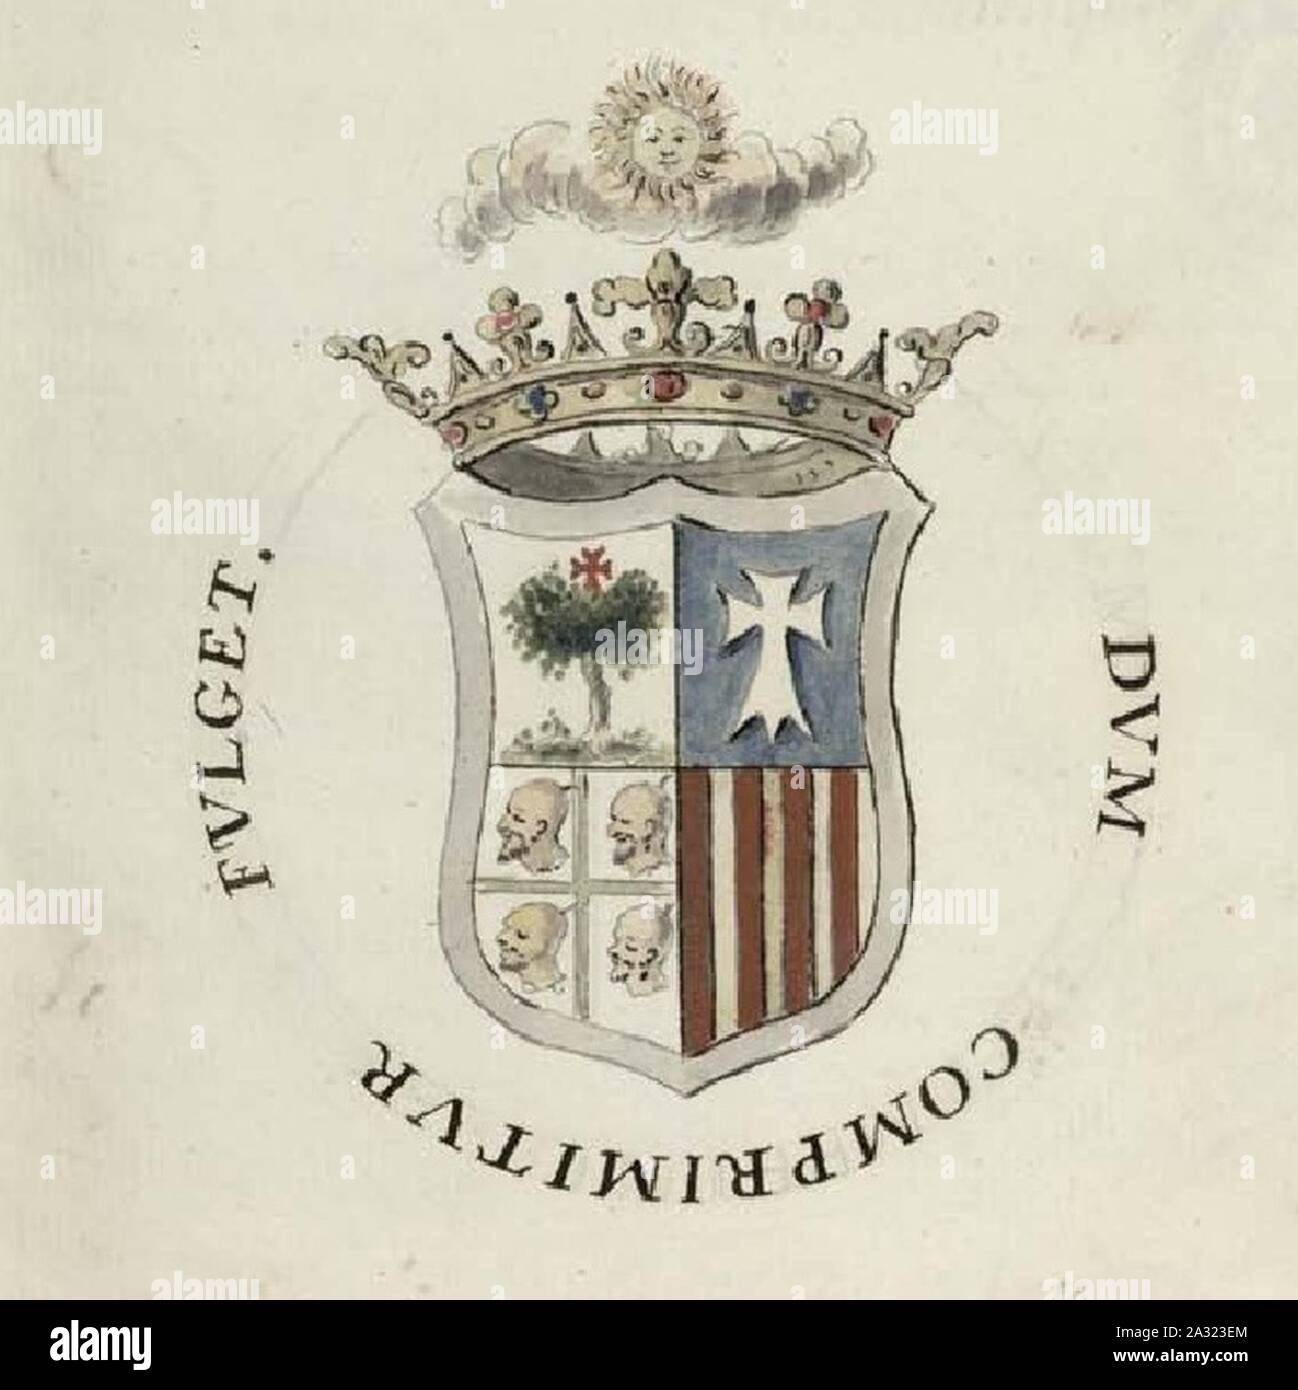 Escudo que figura en la Segunda parte del Patronado de Calatayud. Stock Photo